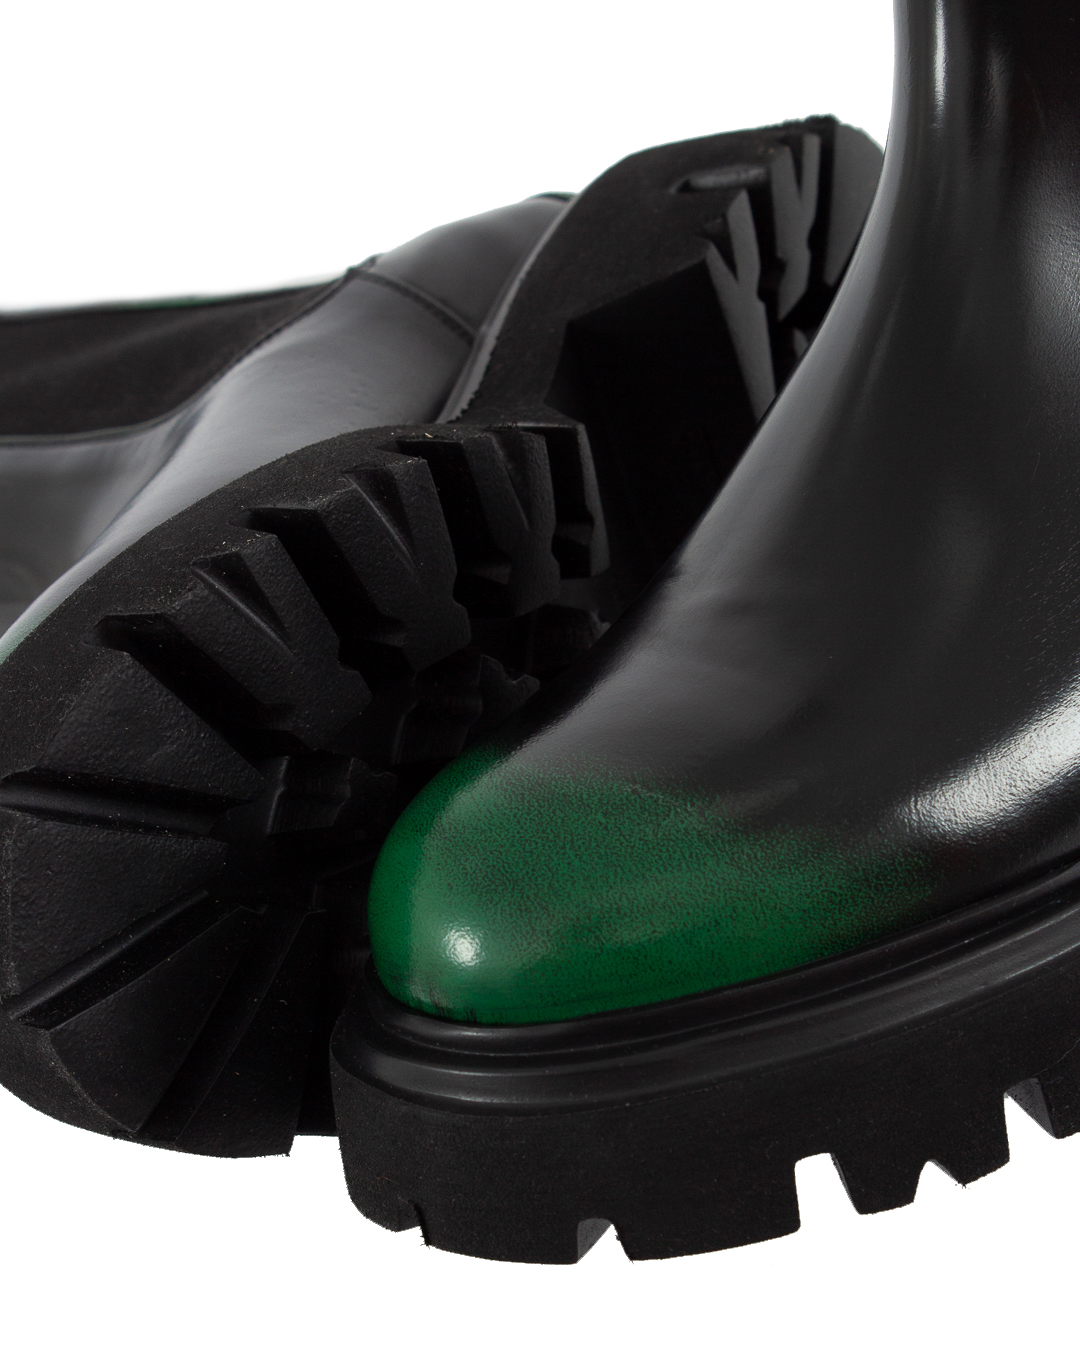 ботинки MSGM 3541MDS274 черный+зеленый 36, размер 36, цвет черный+зеленый 3541MDS274 черный+зеленый 36 - фото 3